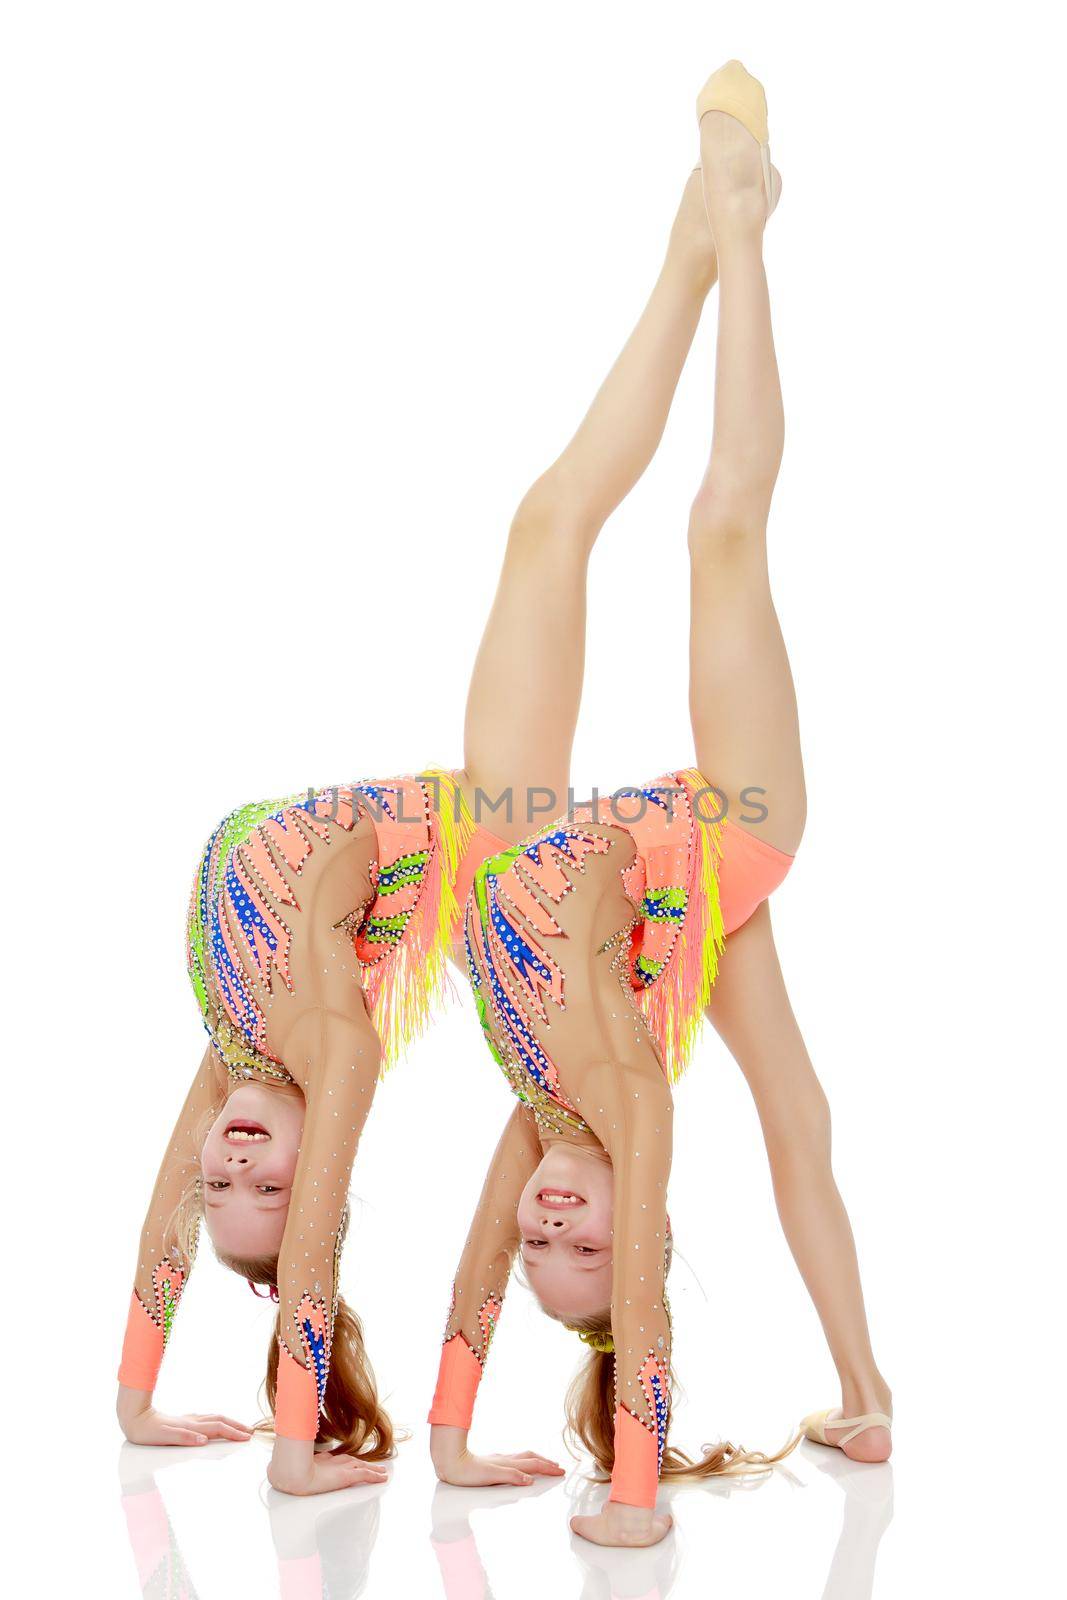 Girls gymnasts perform exercises. by kolesnikov_studio